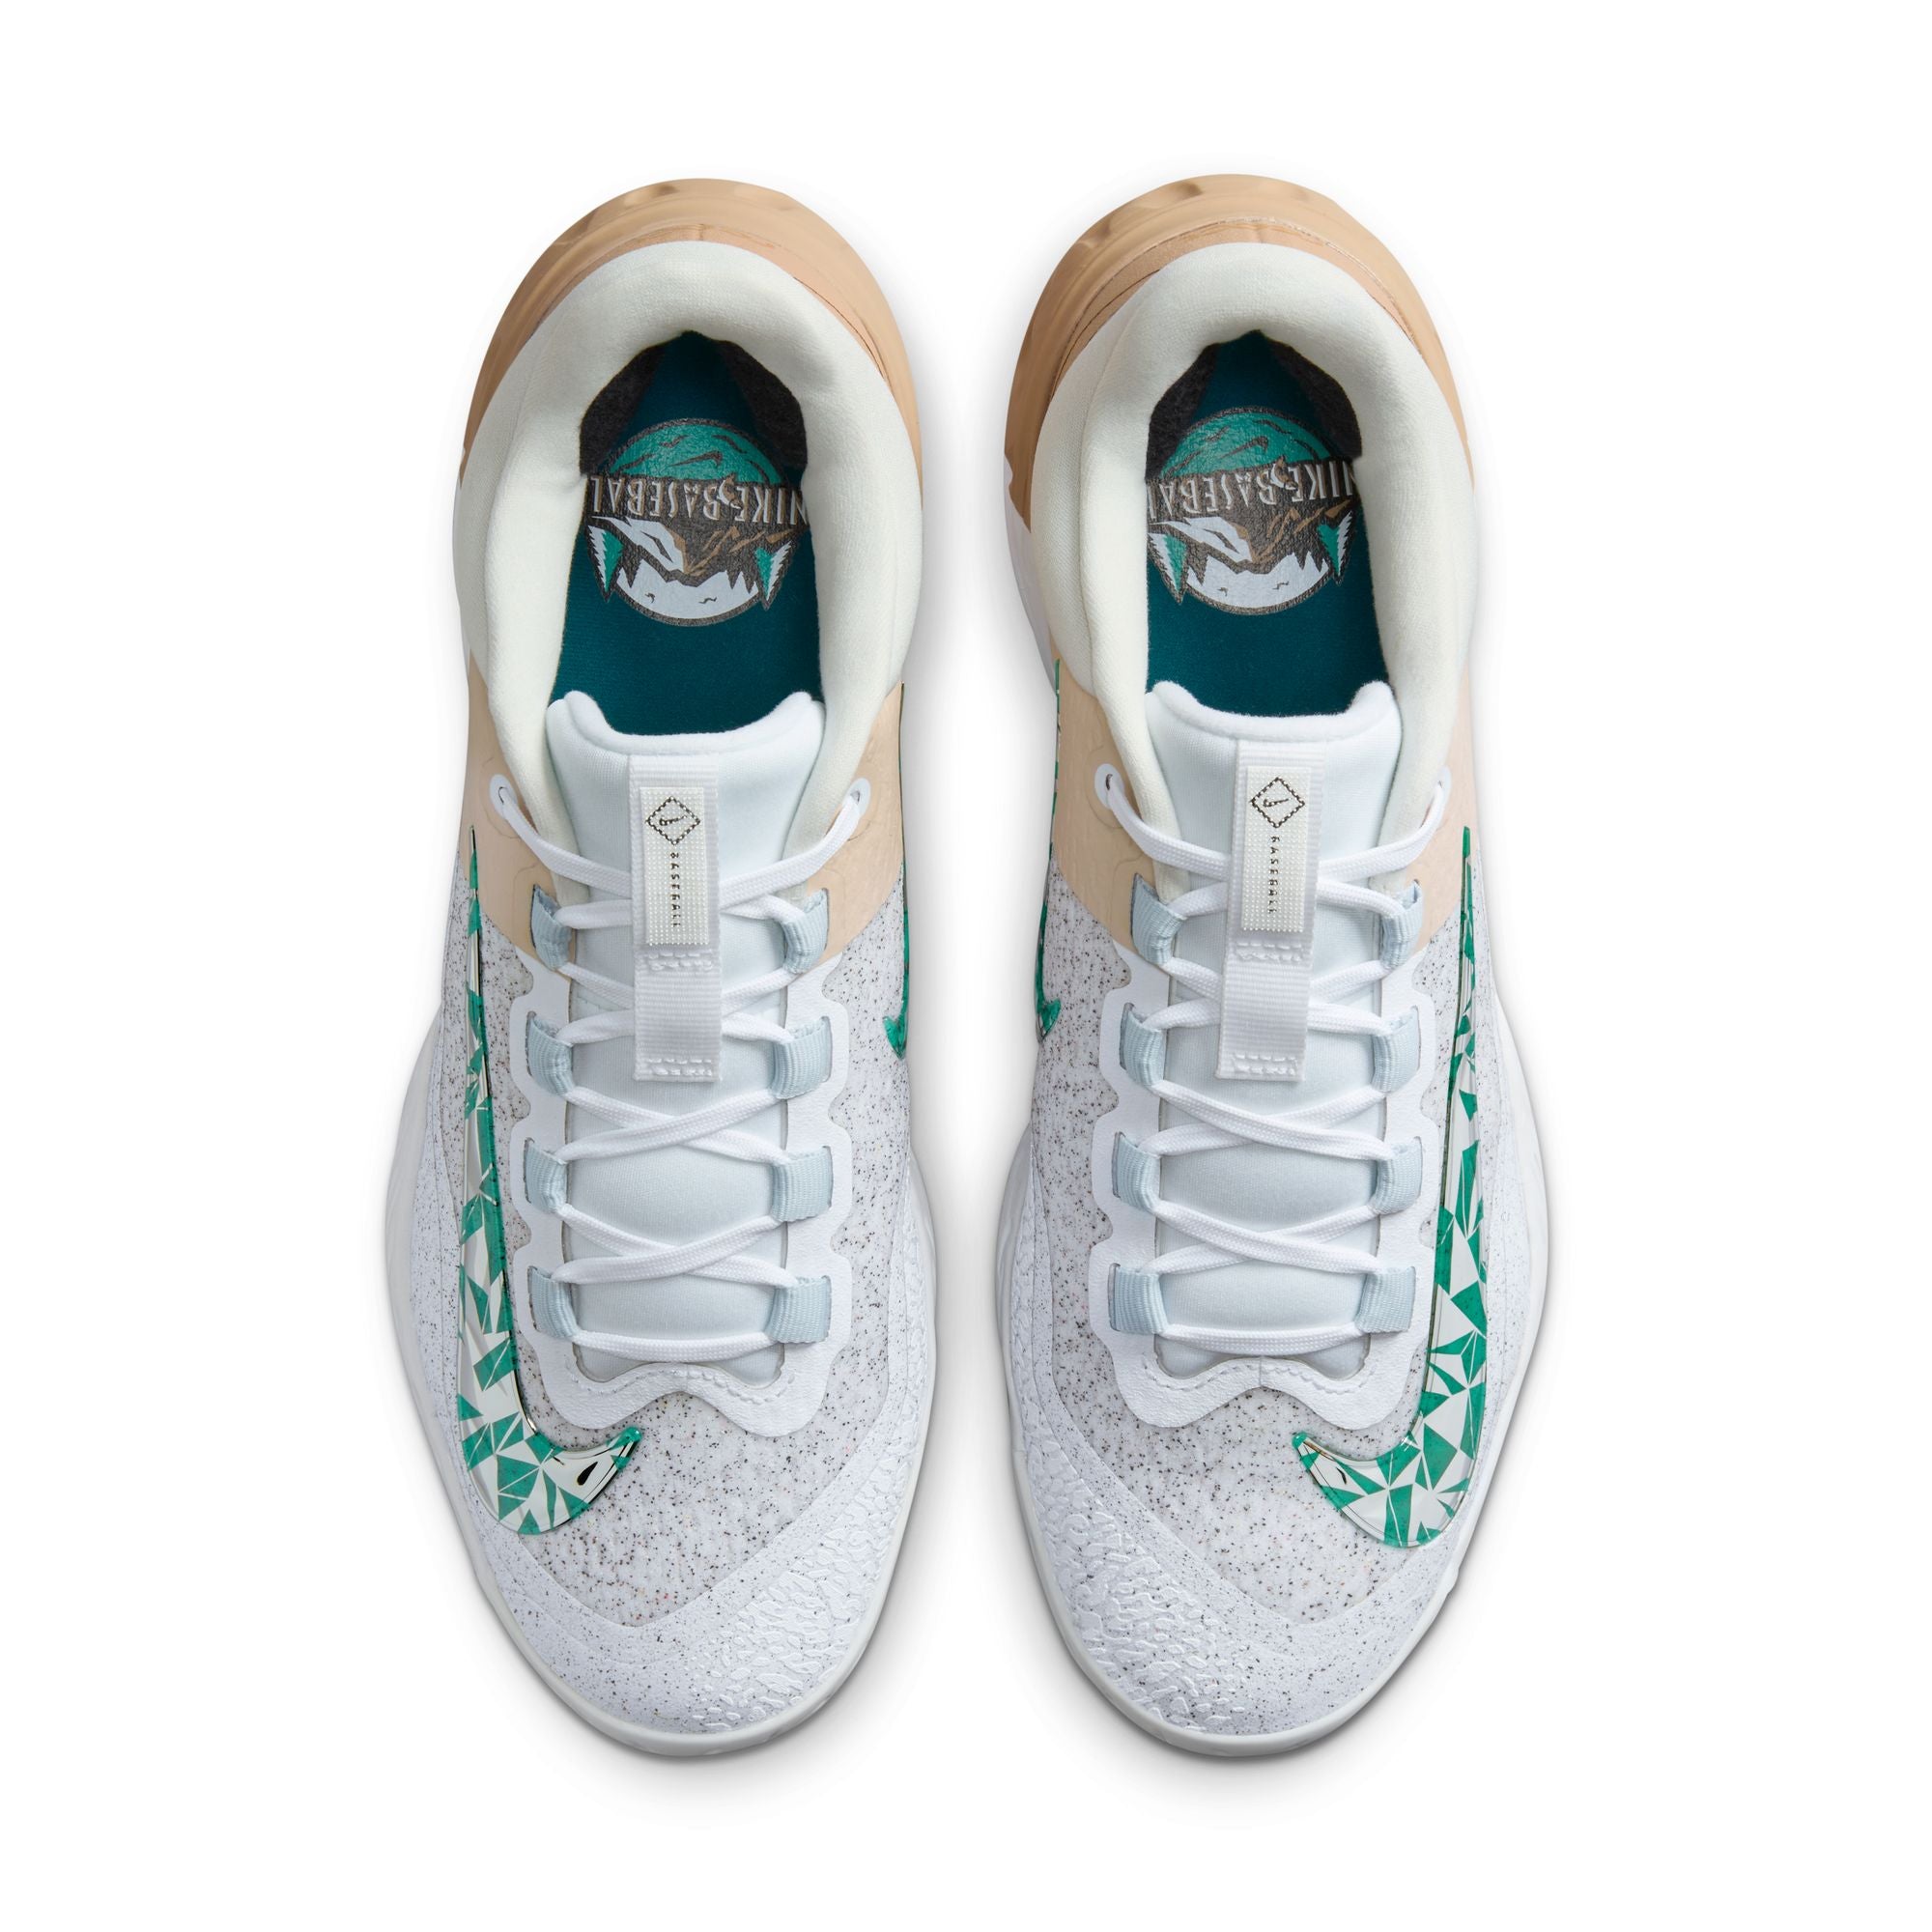 Nike Mens Alpha Huarache Elite 4 Low MCS - Baseball Shoes